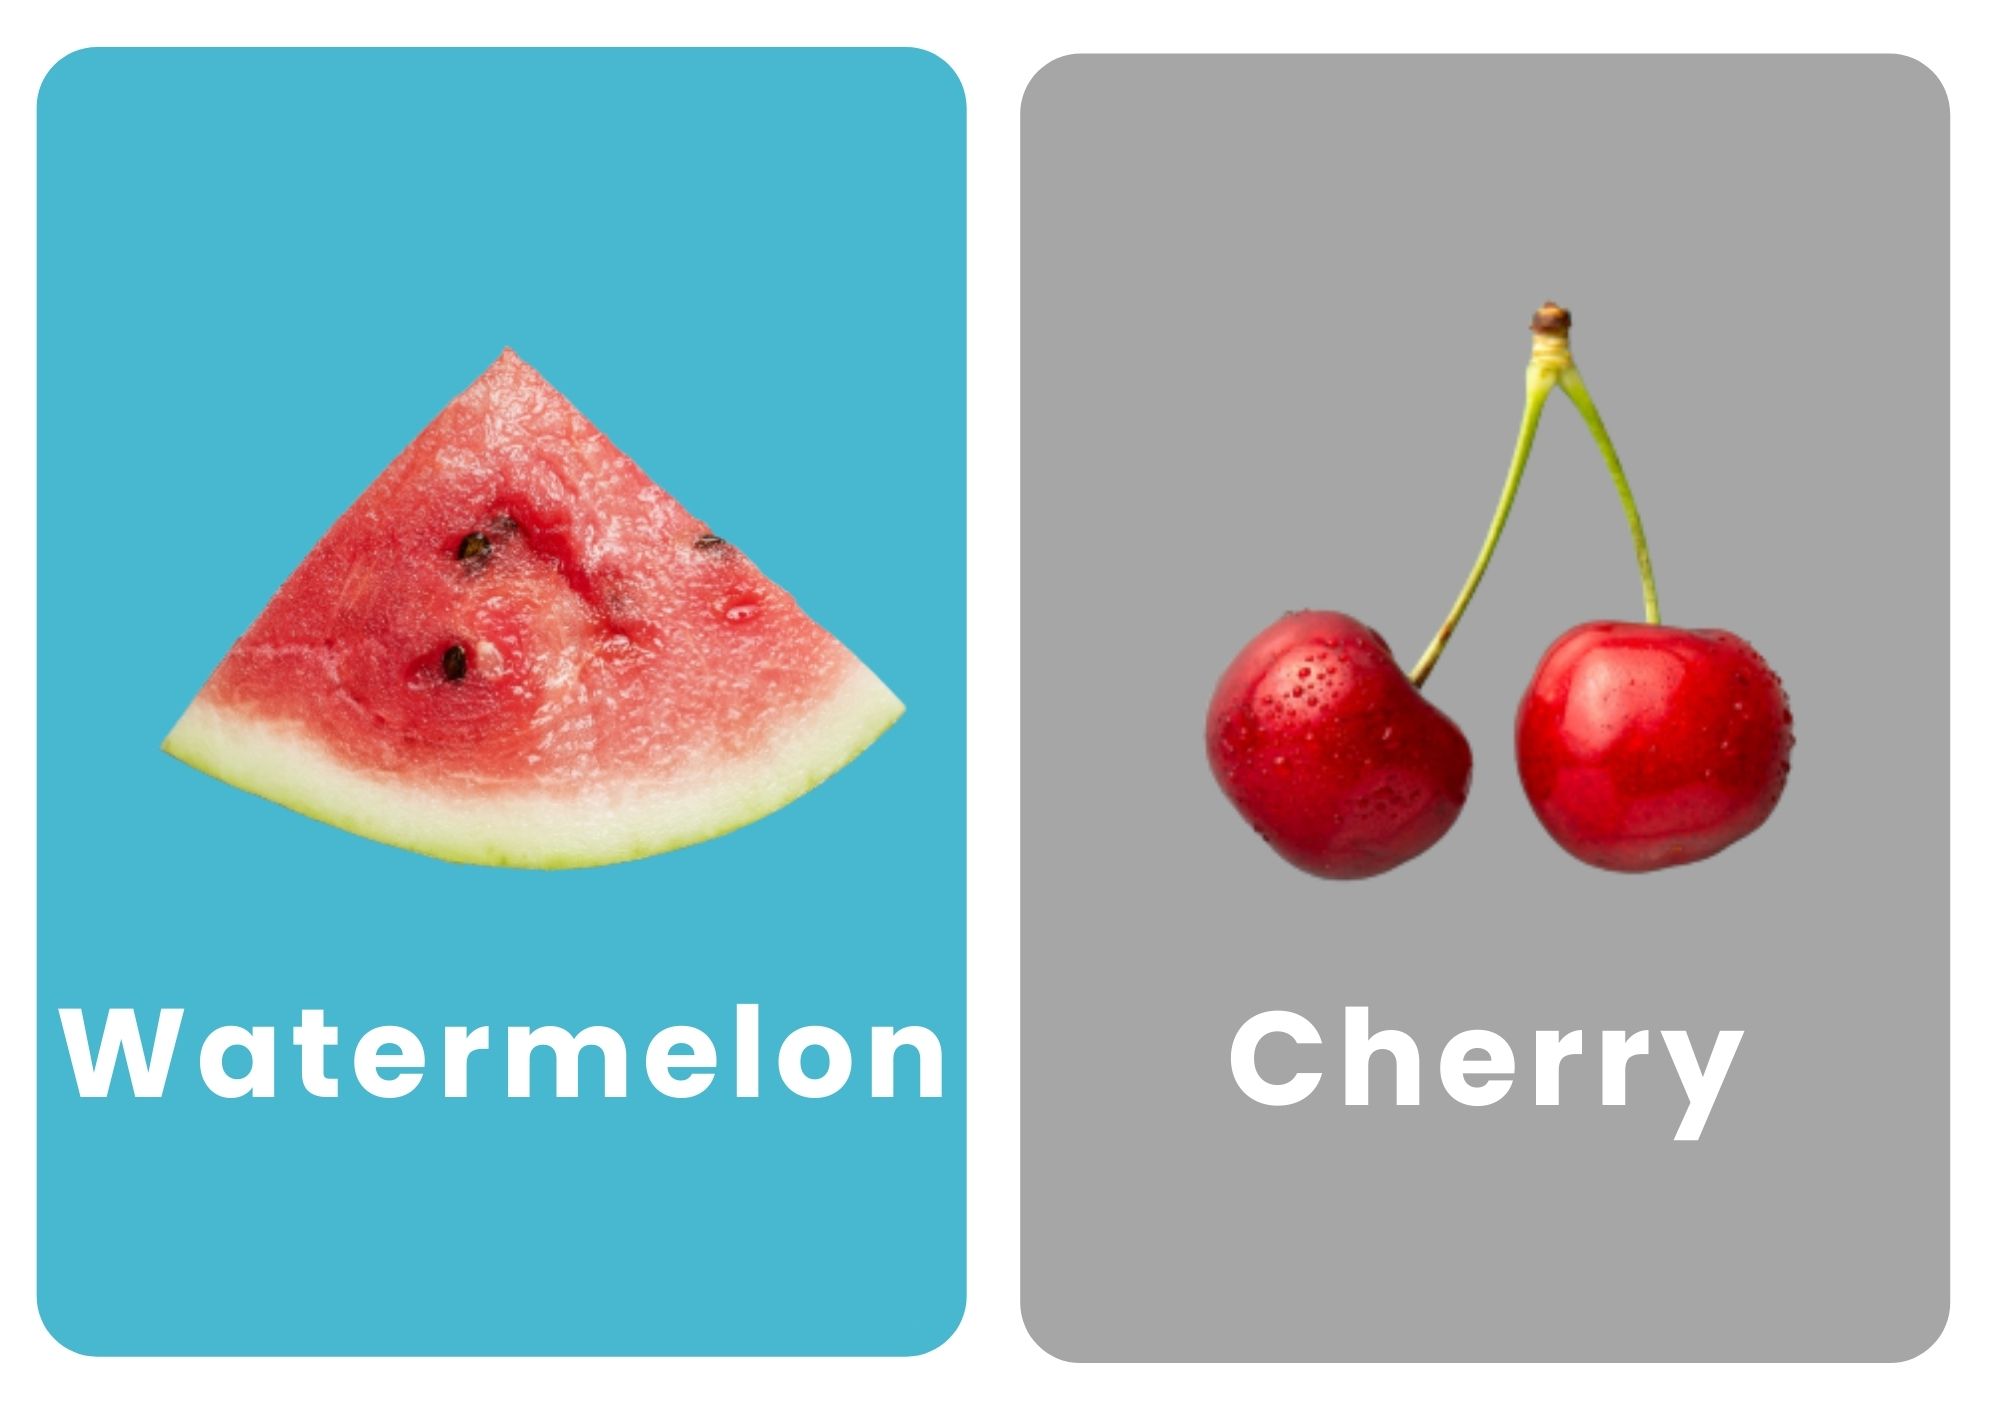 карточки фруктов на английском арбуз вишня черешня